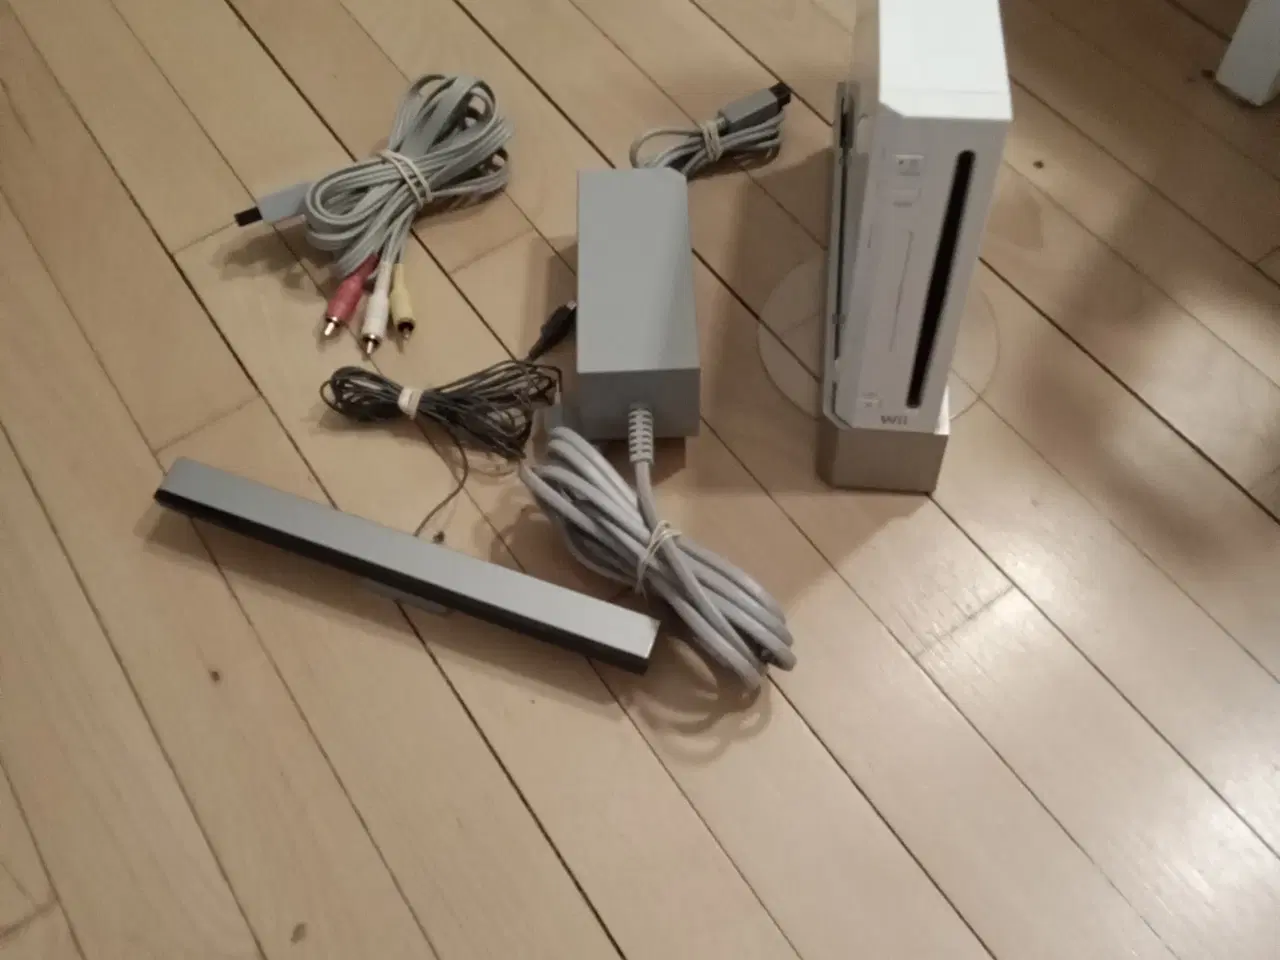 Billede 1 - Wii fit plus kom med et seriøst bud